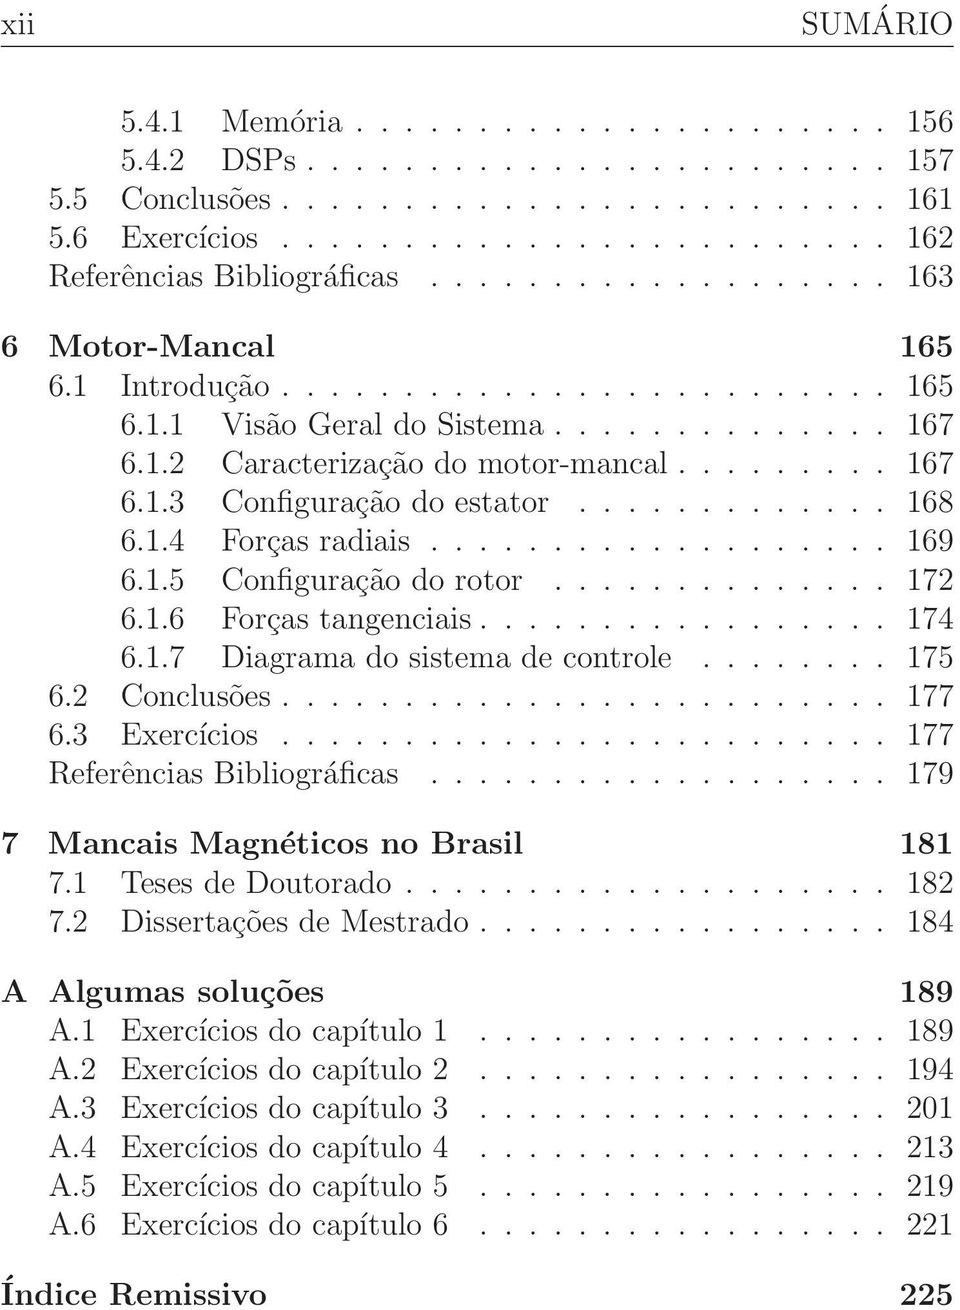 .. 175 6.2 Conclusões... 177 6.3 Exercícios... 177 Referências Bibliográficas... 179 7 Mancais Magnéticos no Brasil 181 7.1 TesesdeDoutorado... 182 7.2 DissertaçõesdeMestrado.